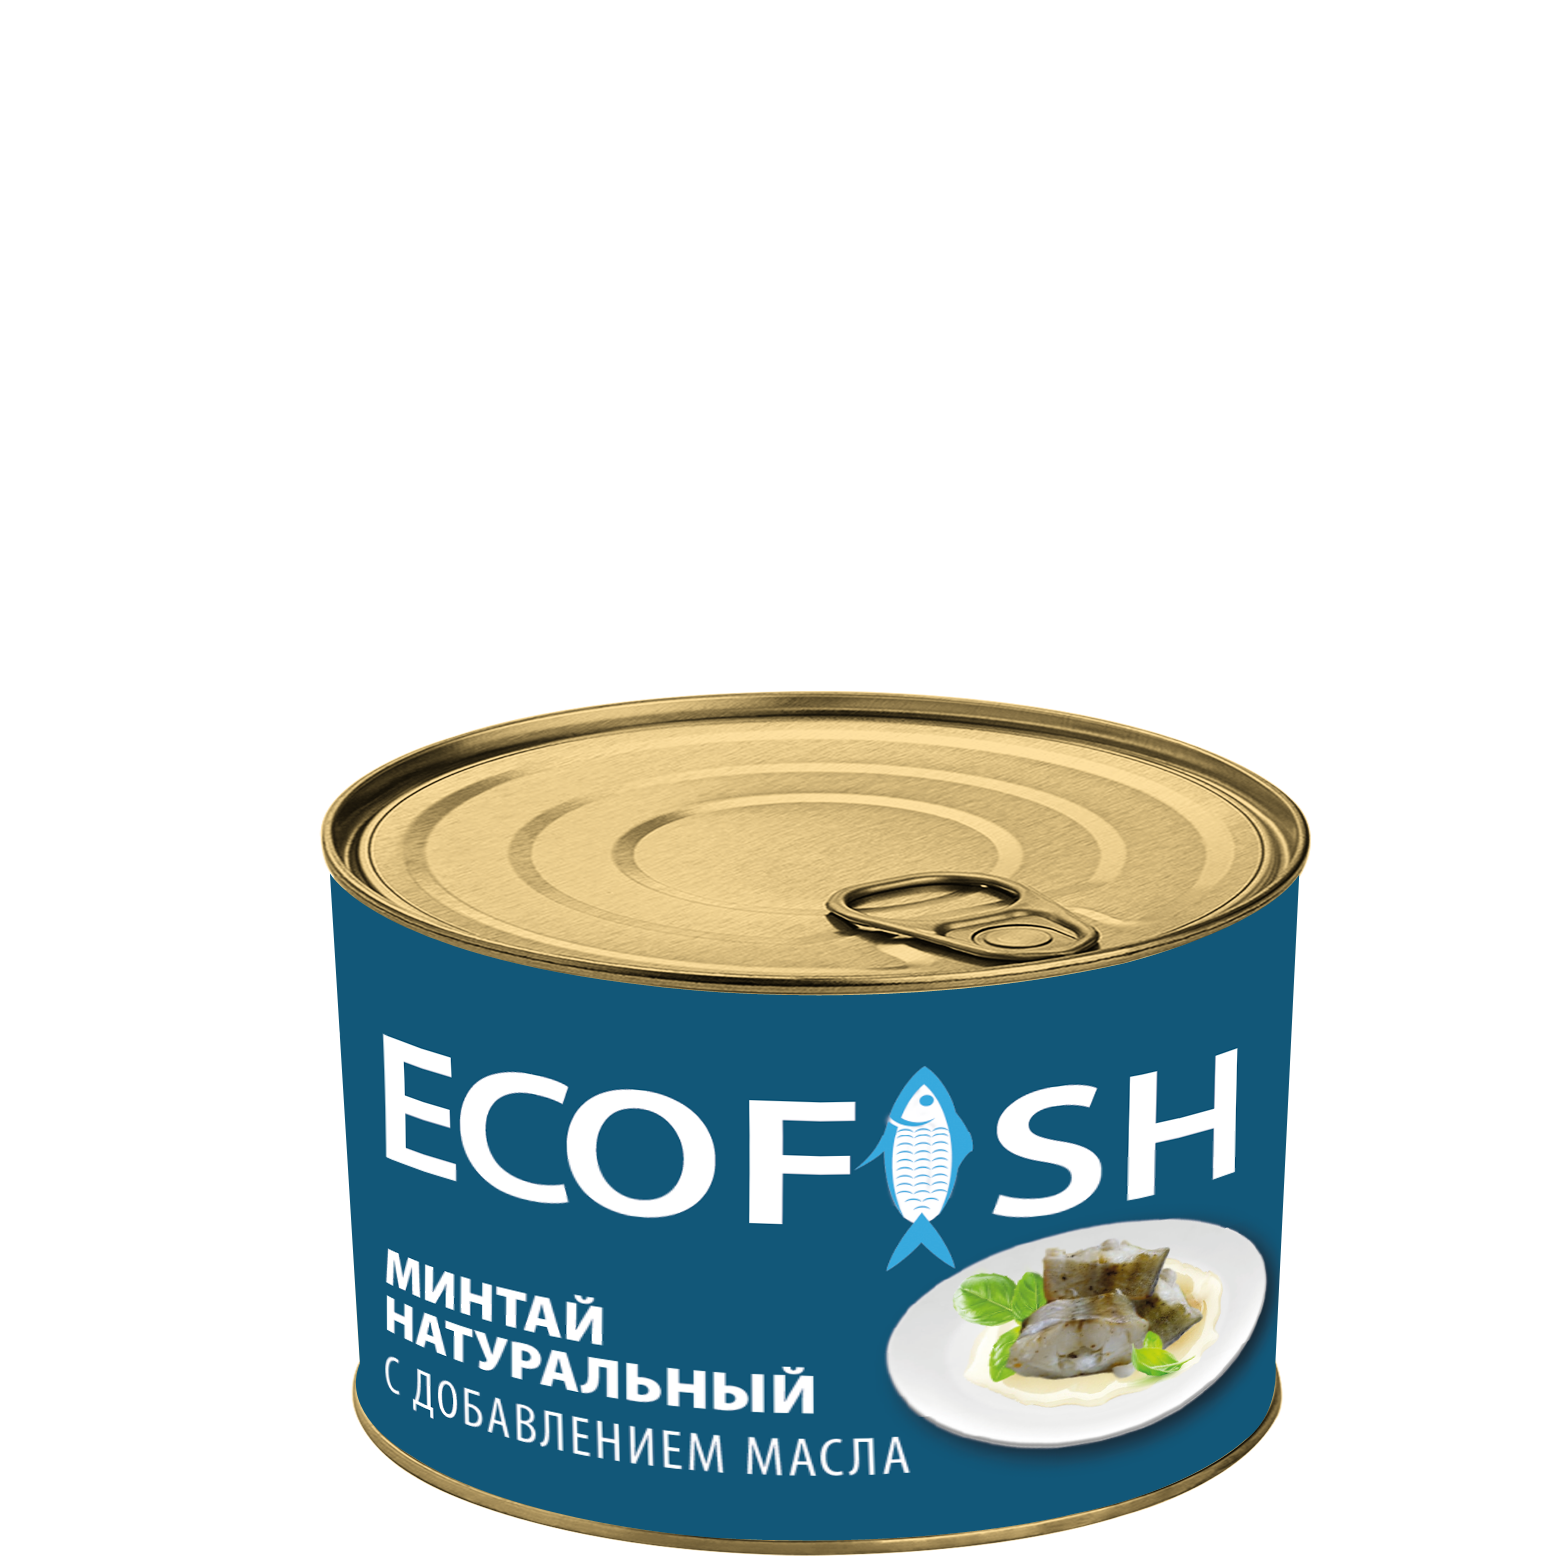 Минтай натуральный с добавлением масла ECOFISH ГОСТ